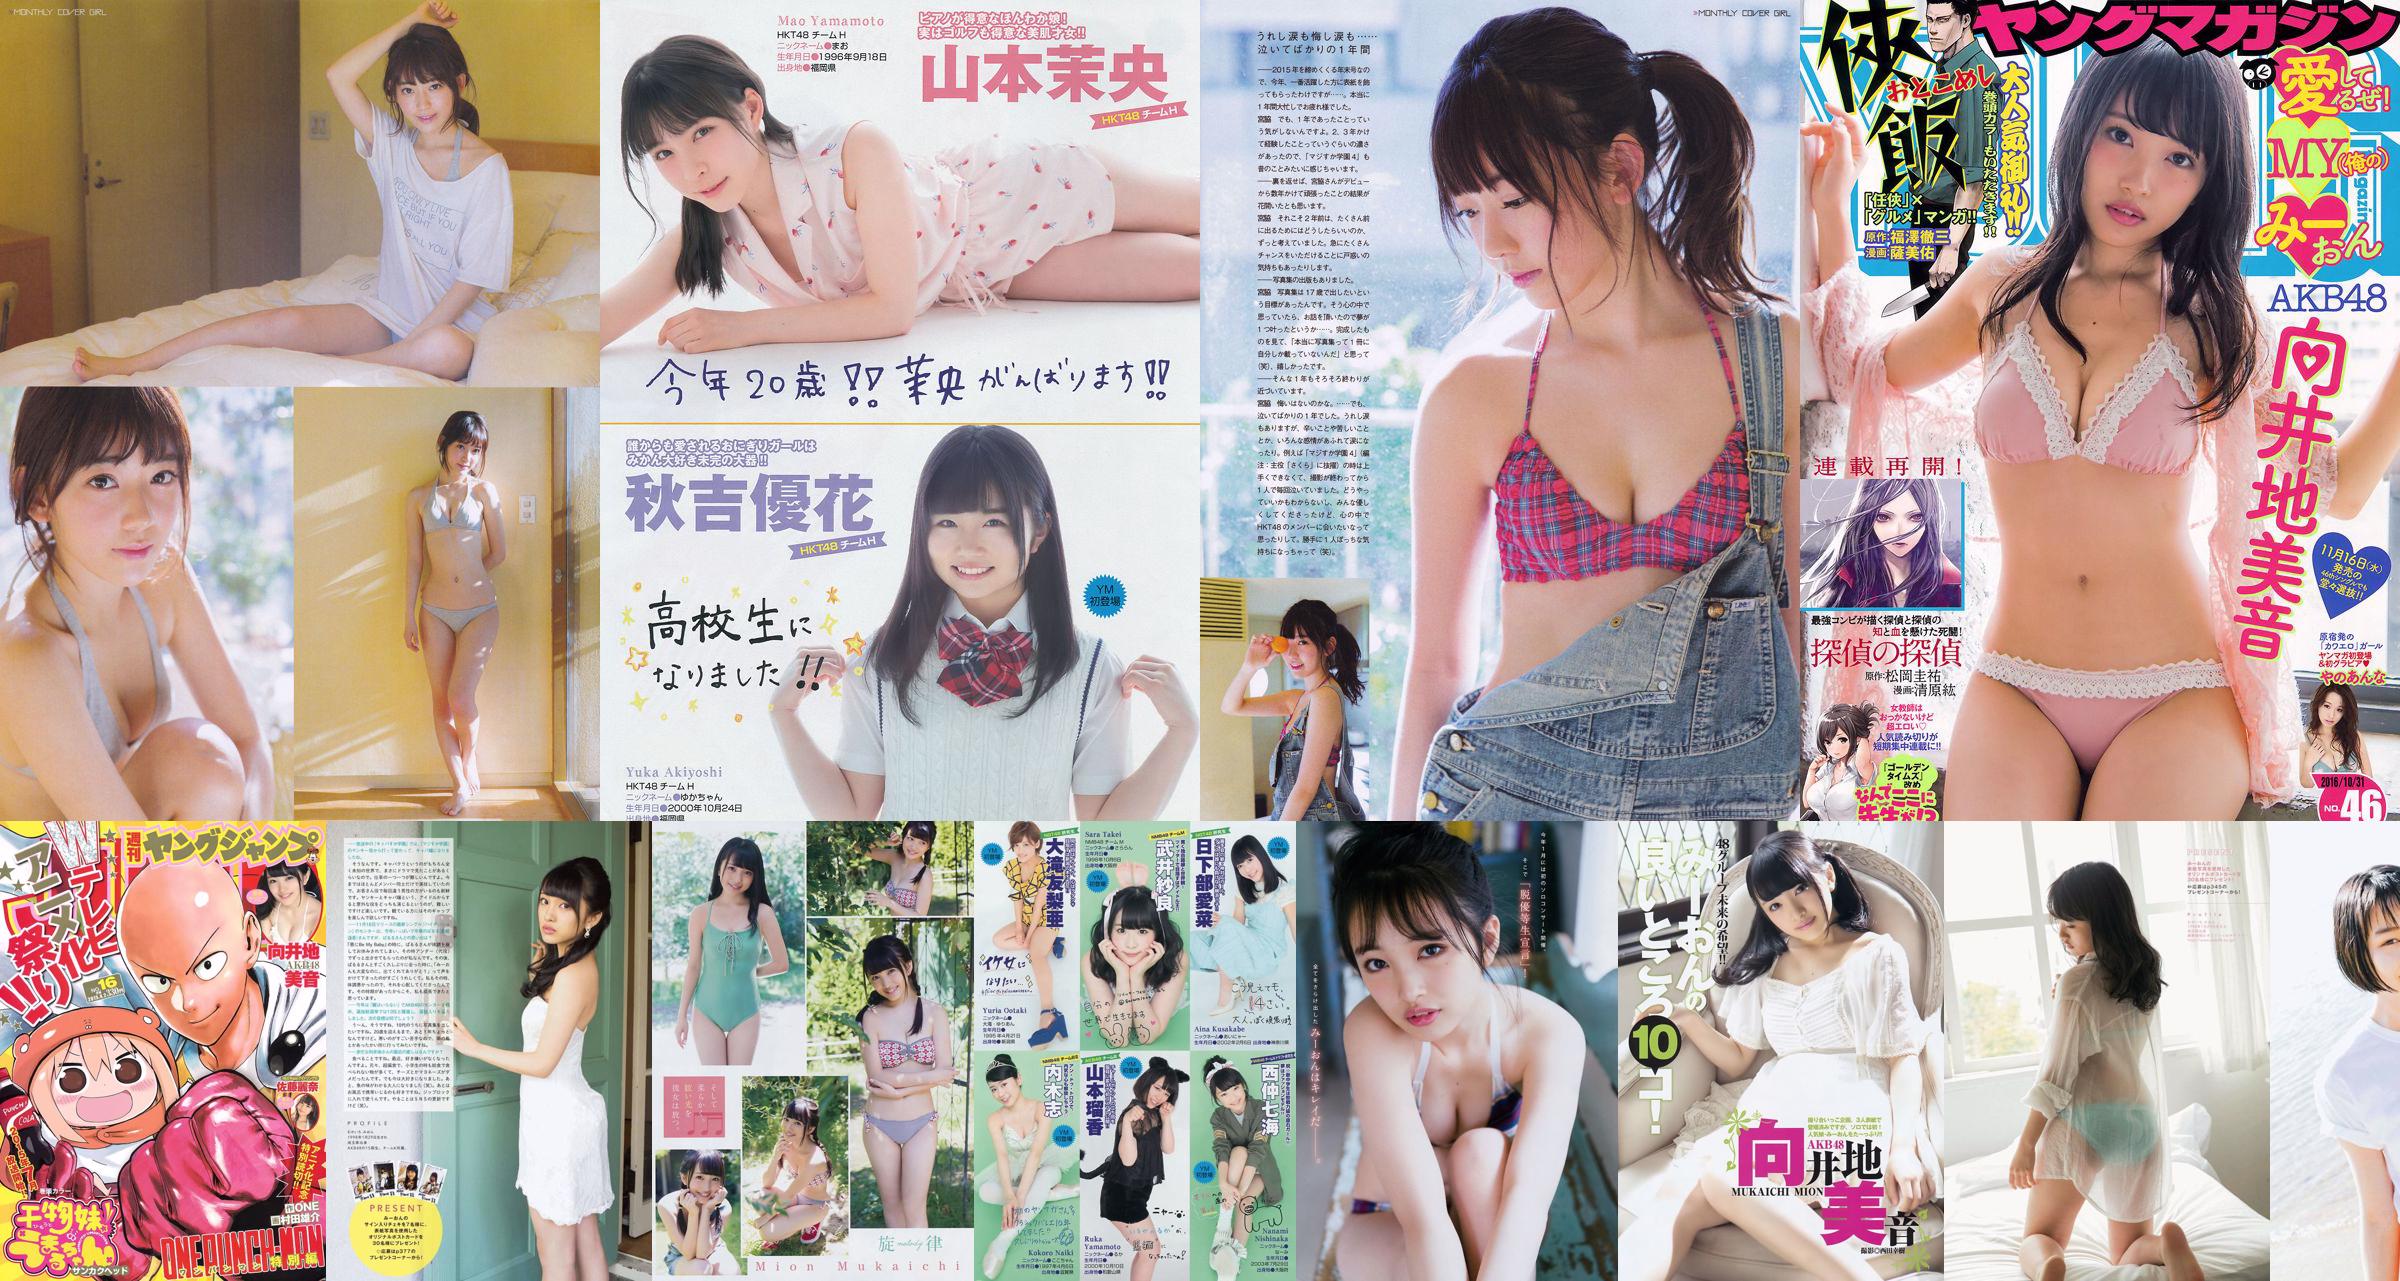 [Young Magazine] Mion Mukaichi Rin Kaname 2017 Nr. 24 Foto No.0b60bd Seite 1